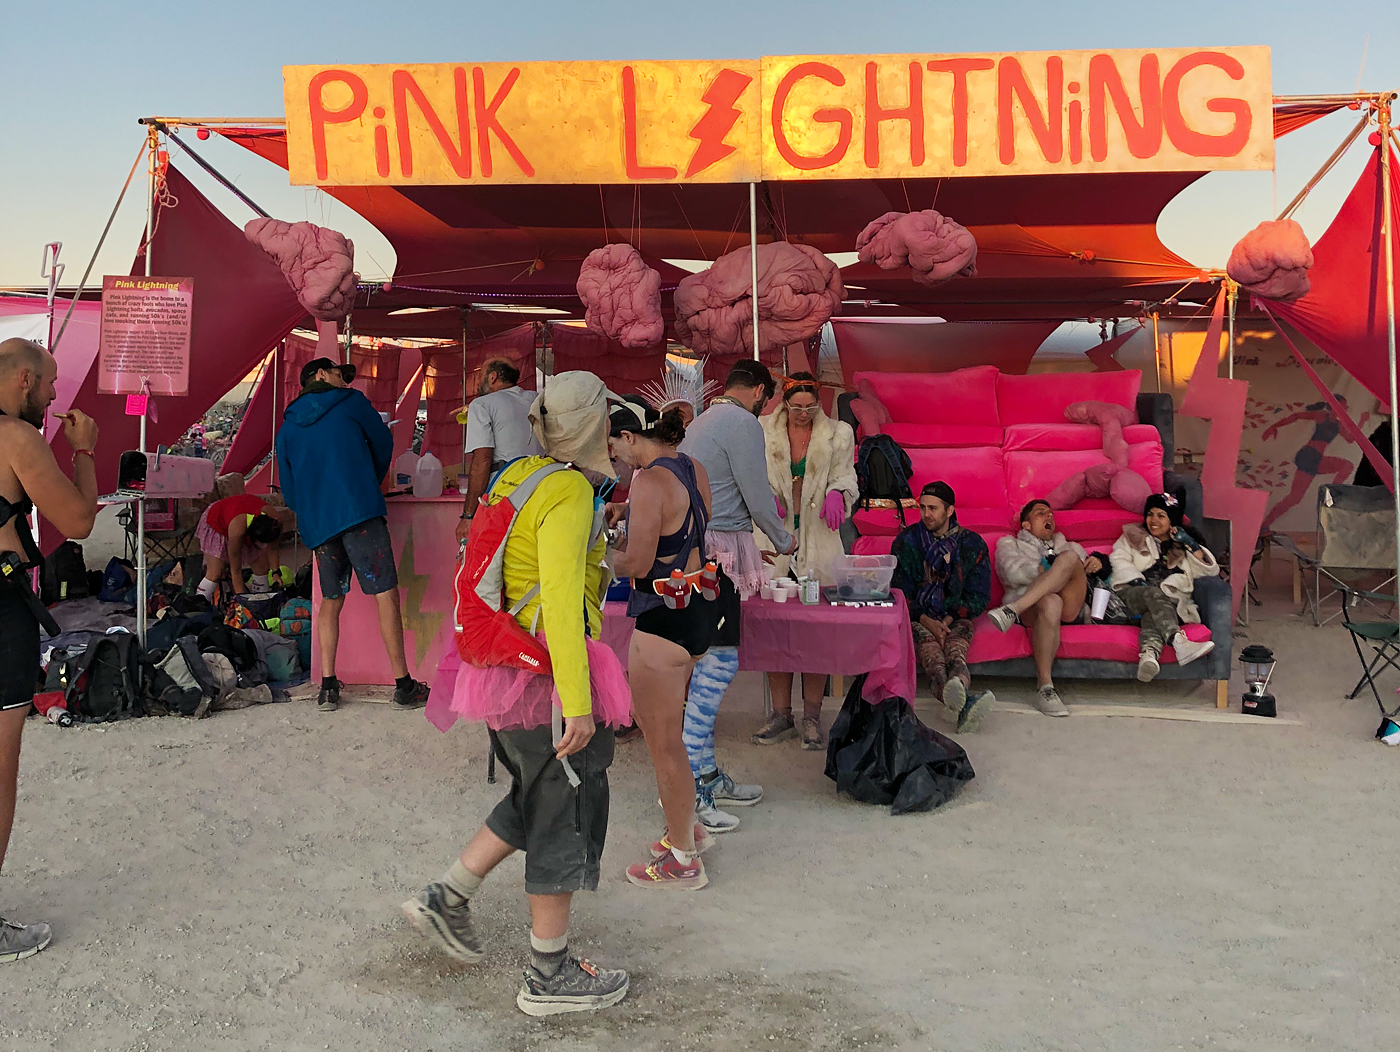 Как это вообще – пробежать ультрамарафон по пустыне Невада на Burning Man